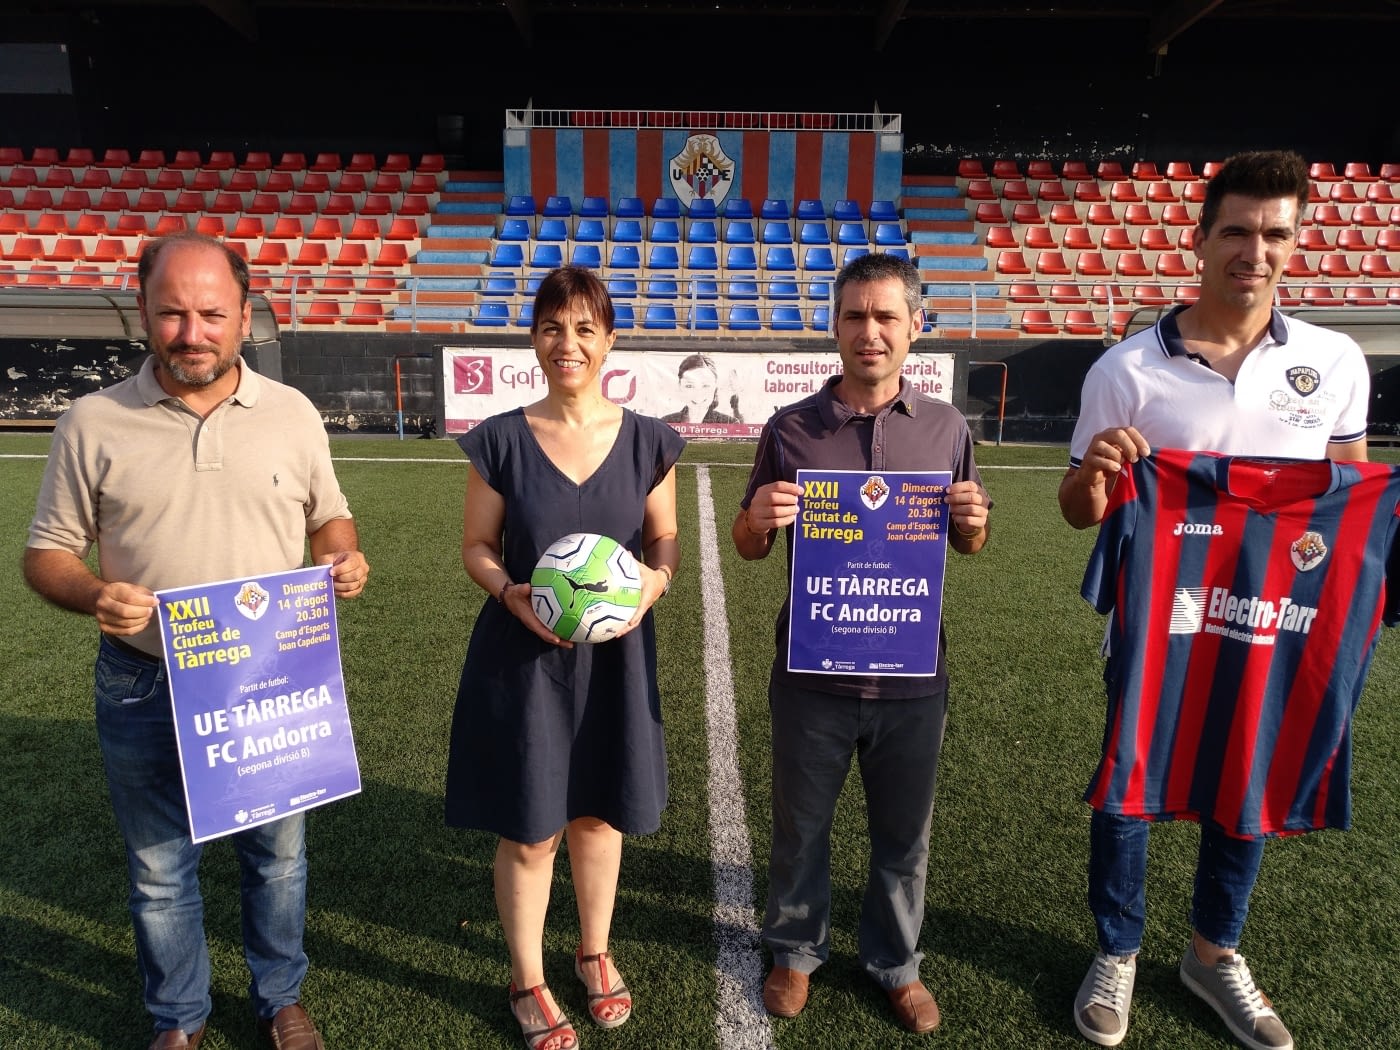 El FC Andorra, convidat de luxe al 22è Trofeu Ciutat de Tàrrega el dimecres 14 d’agost